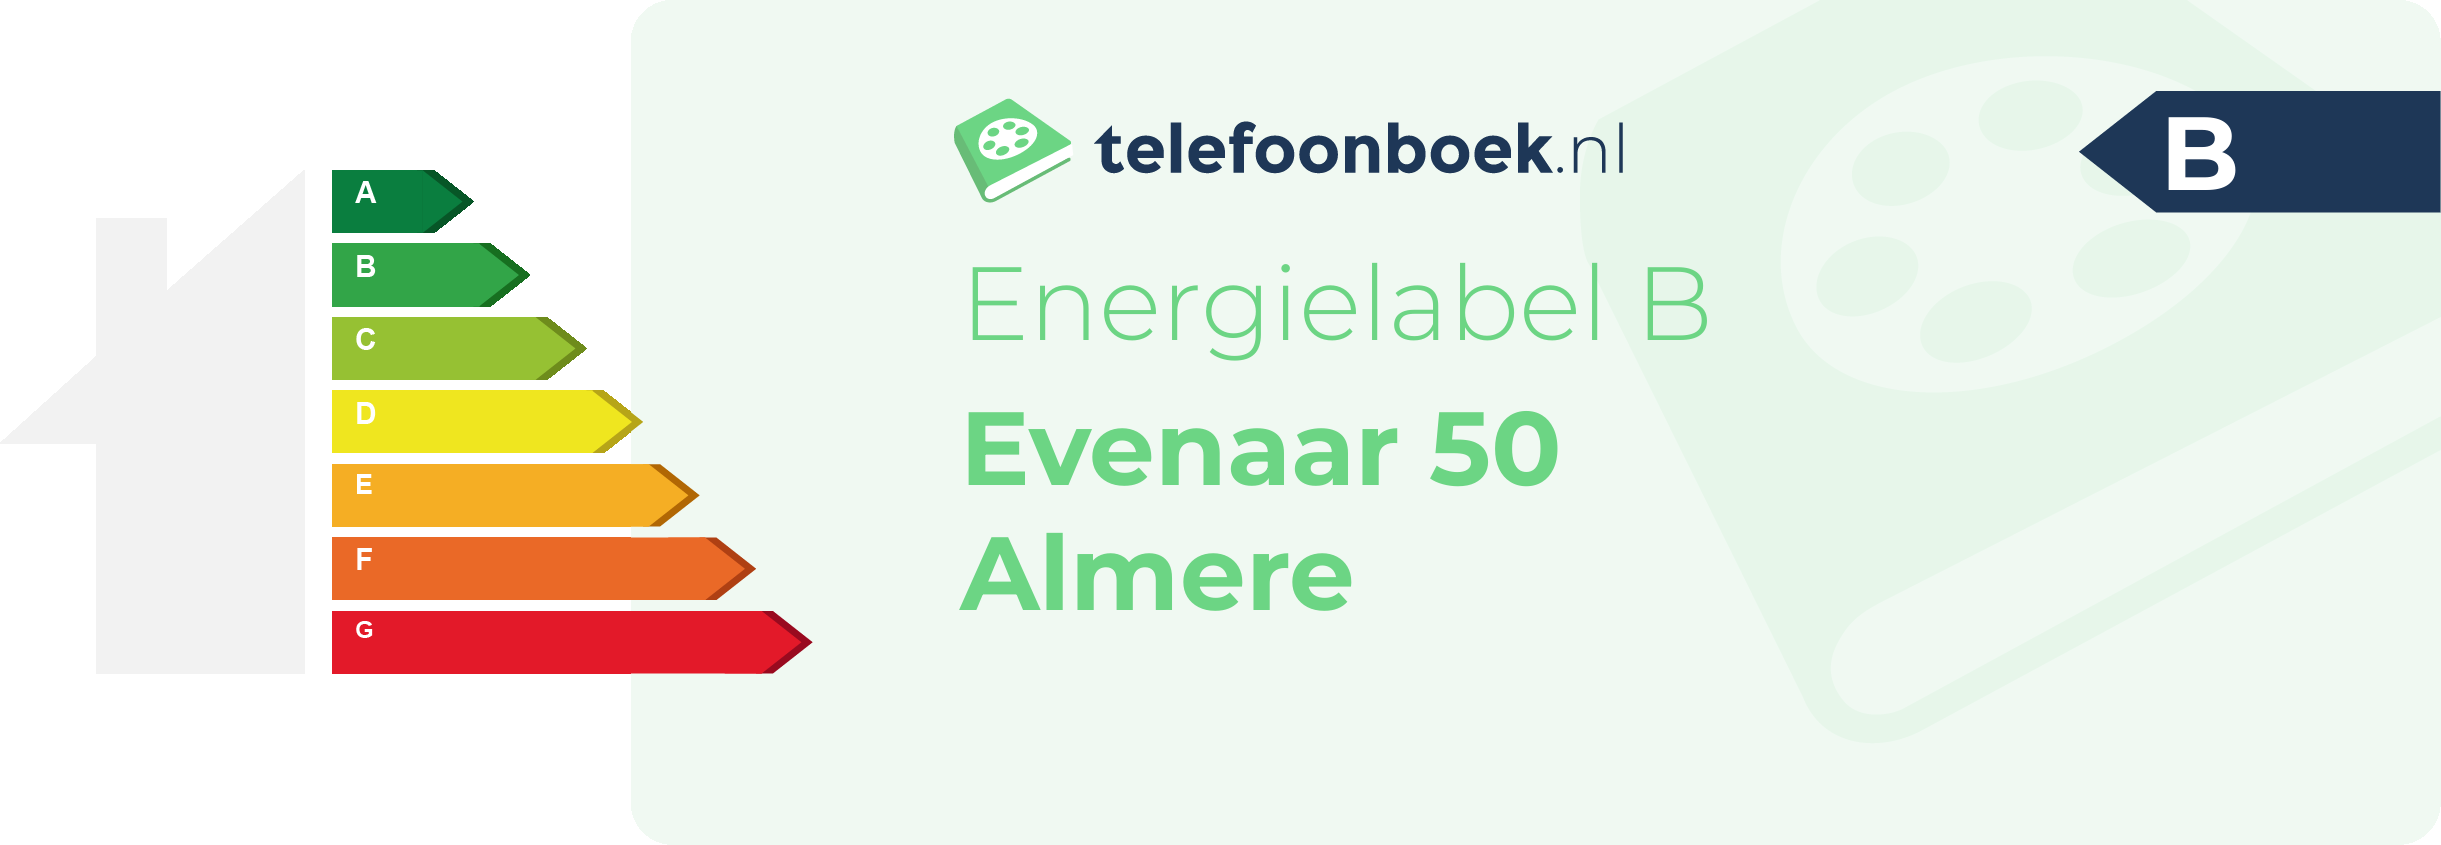 Energielabel Evenaar 50 Almere